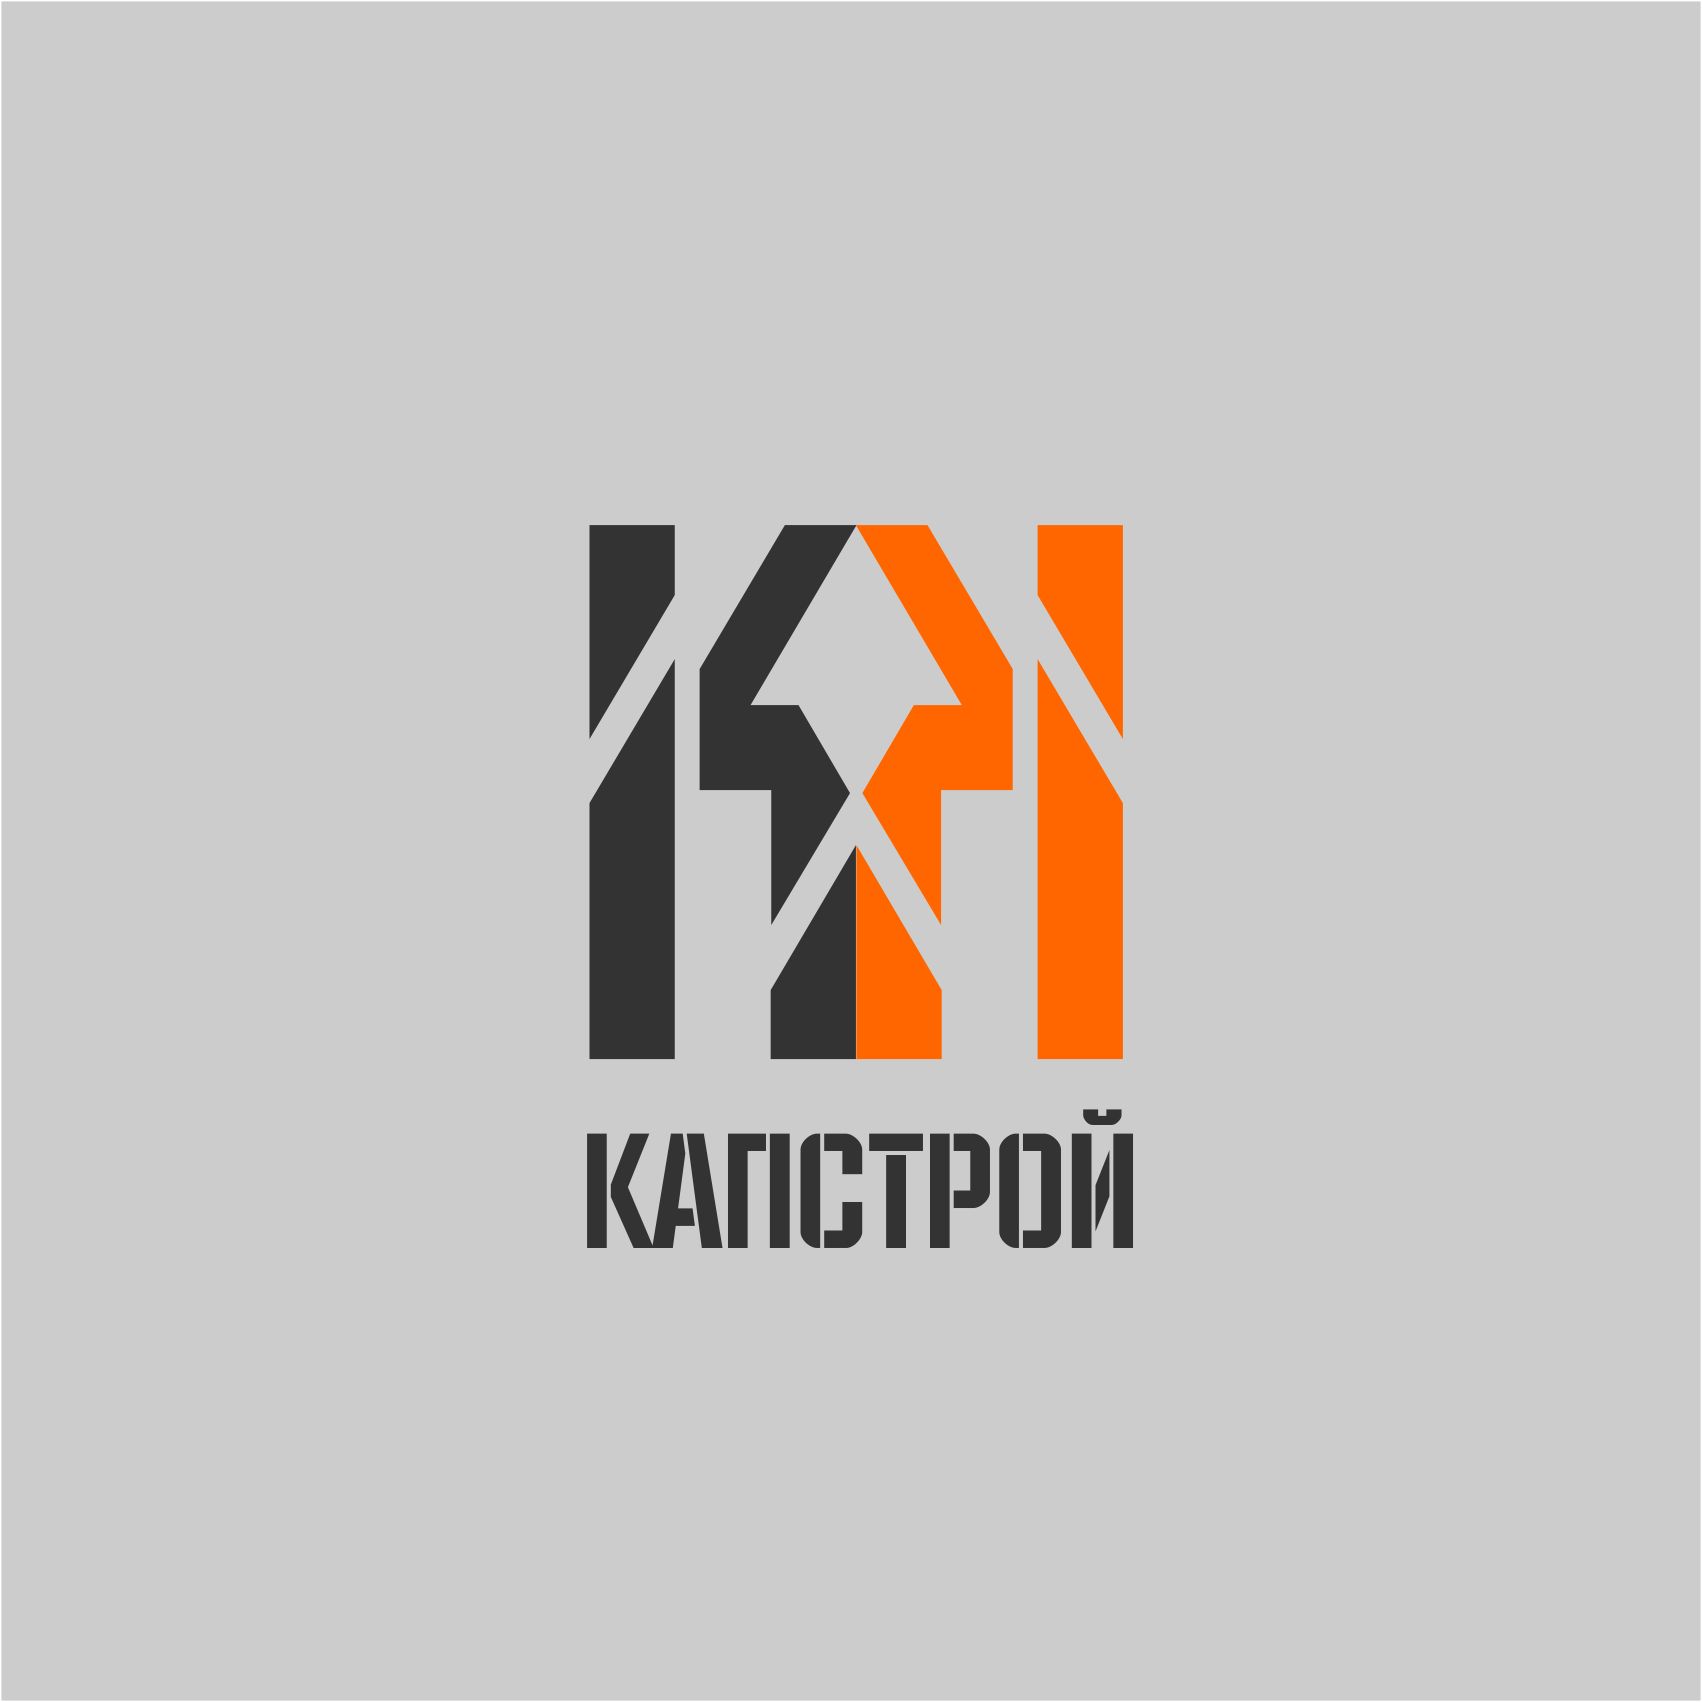 Лого и фирменный стиль для Капстрой  - дизайнер AnatoliyInvito